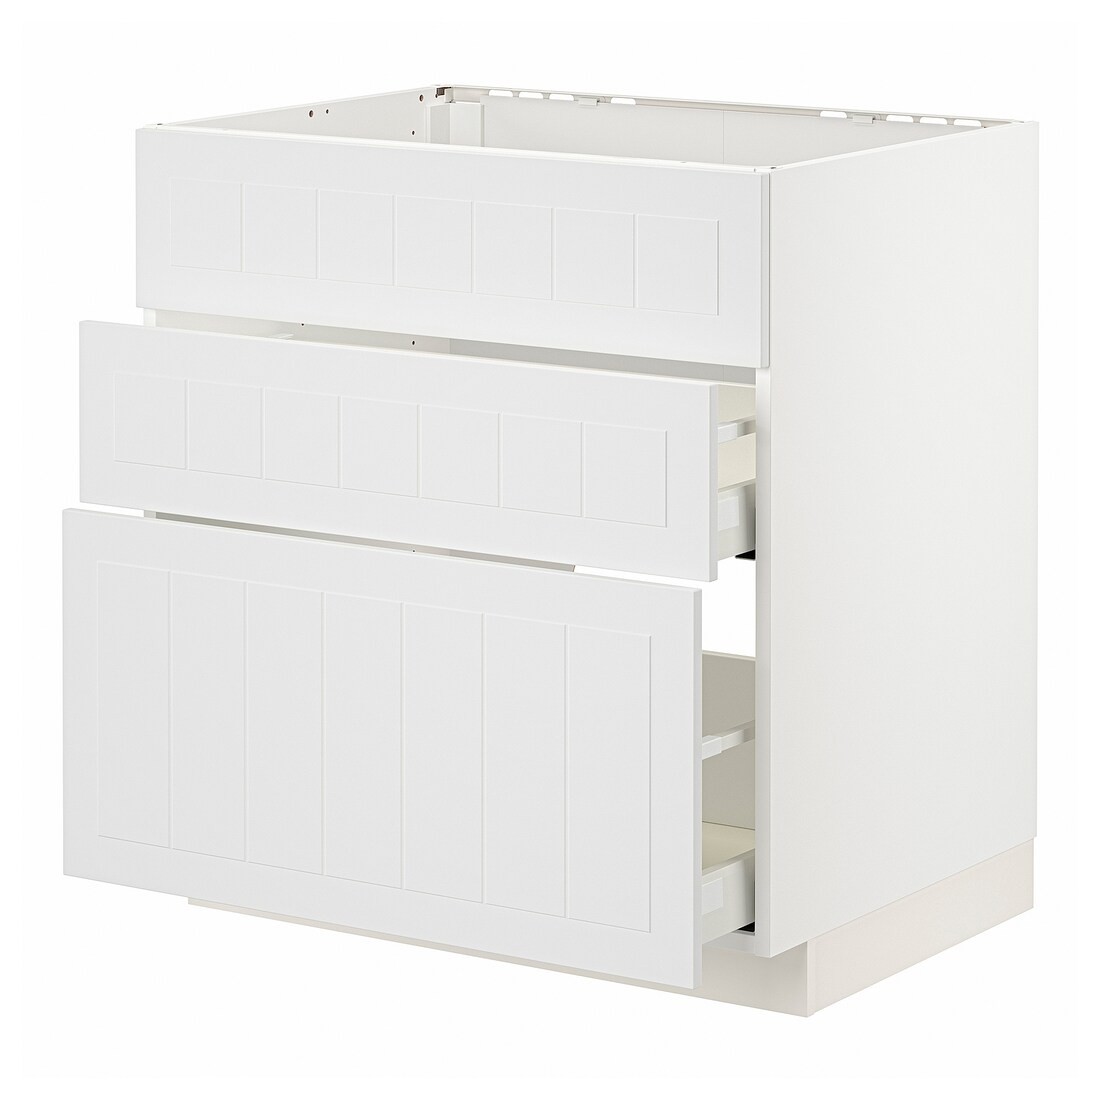 METOD МЕТОД / MAXIMERA МАКСИМЕРА Напольный шкаф для варочной панели / вытяжка с ящиком, белый / Stensund белый, 80x60 см